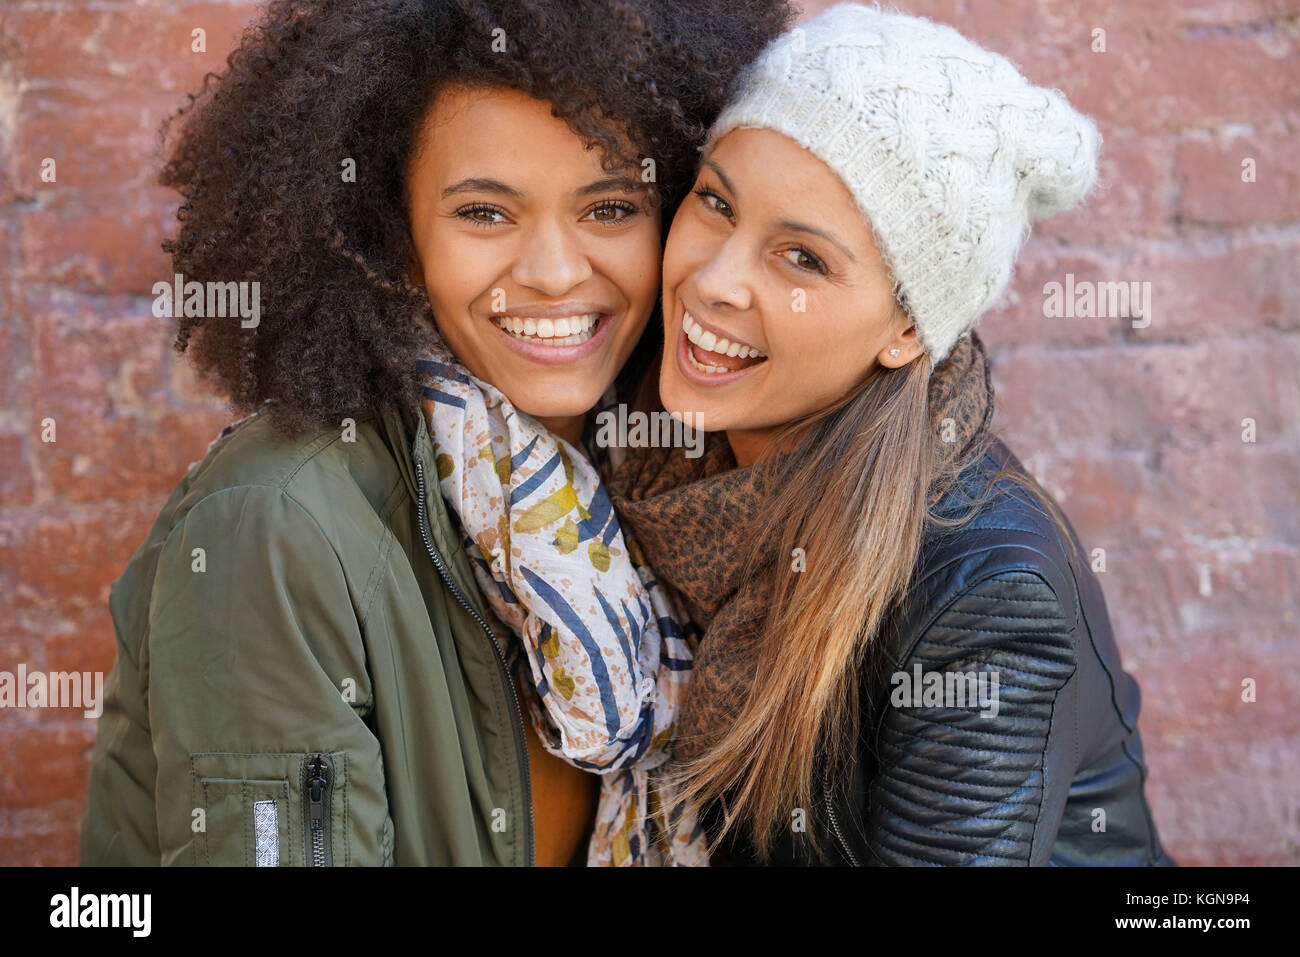 Ritratto di ragazze alla moda avvolgente di fronte a un muro di mattoni Foto Stock